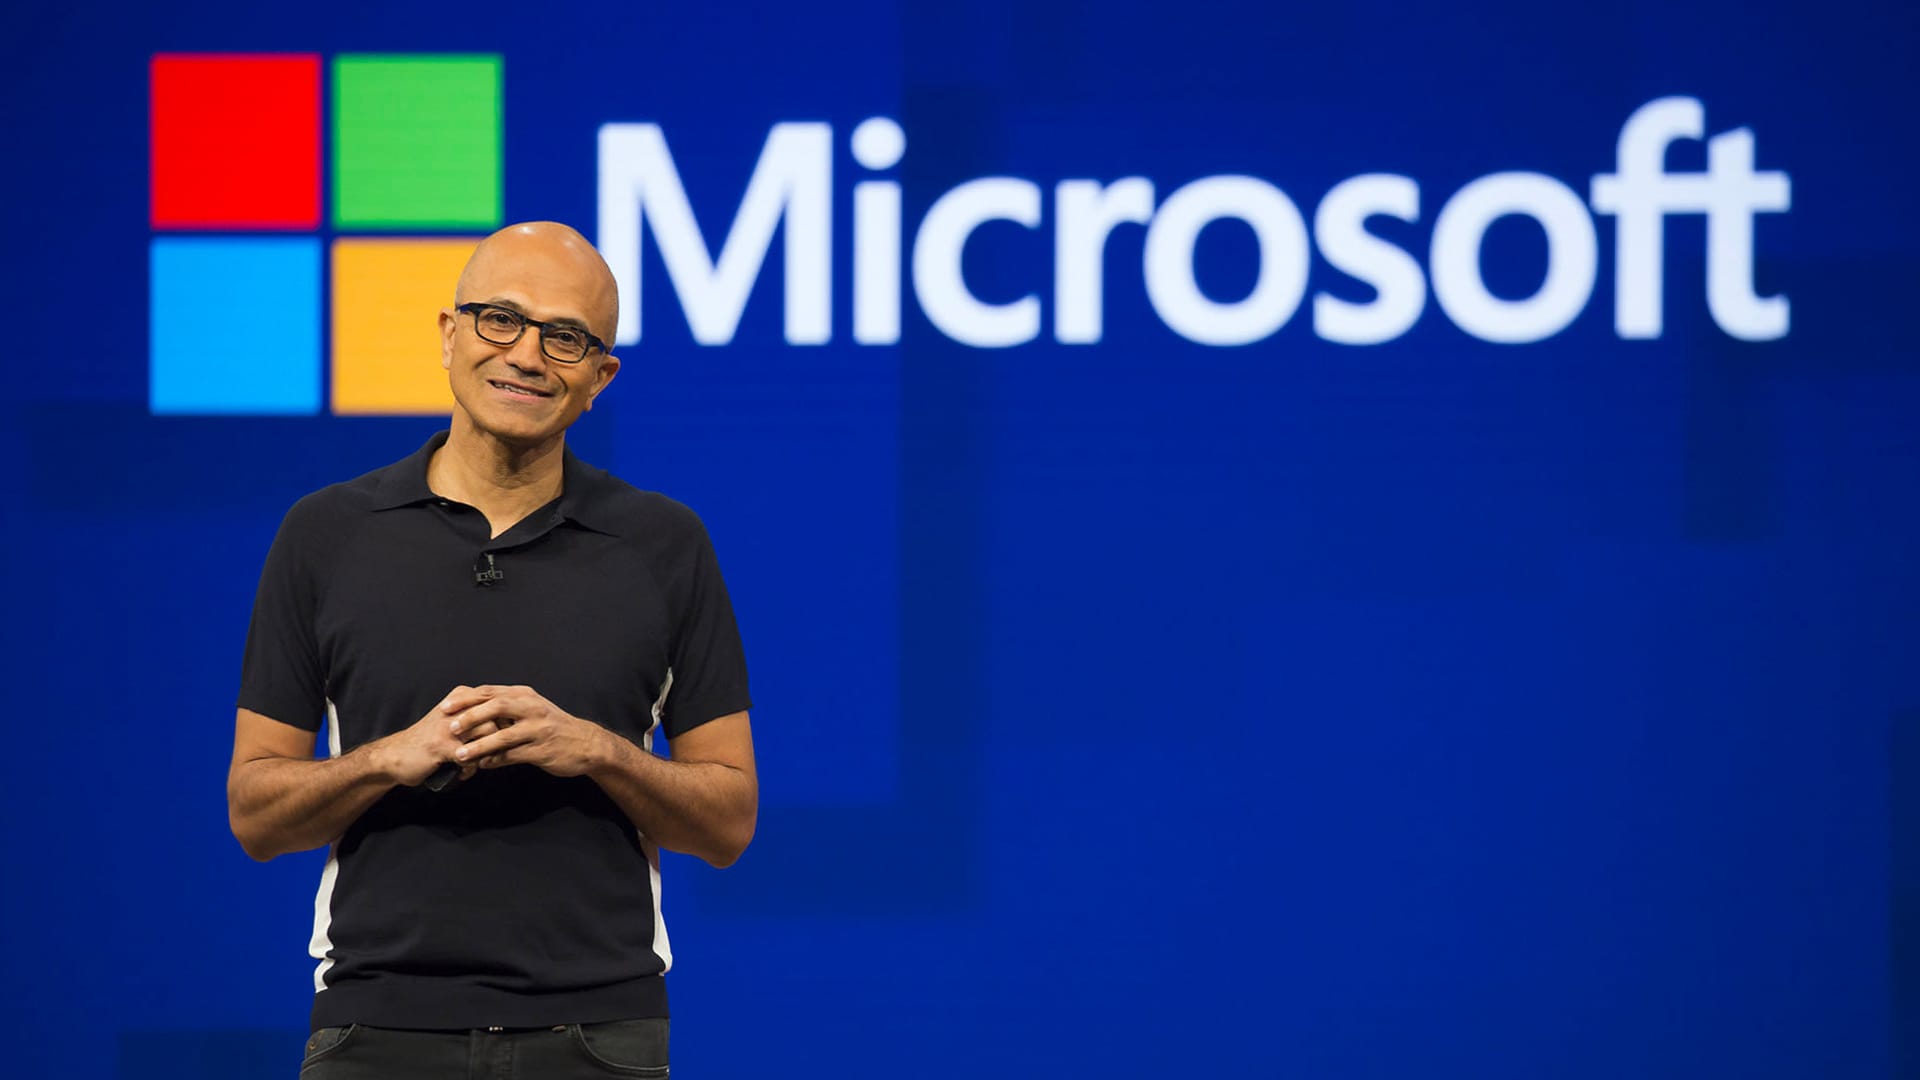 ساتیا نادلا، مدیر عامل مایکروسافت گفت: هند تا سال ۲۰۲۷ از نظر تعداد توسعه دهندگان هوش مصنوعی از ایالات متحده پیشی خواهد گرفت.